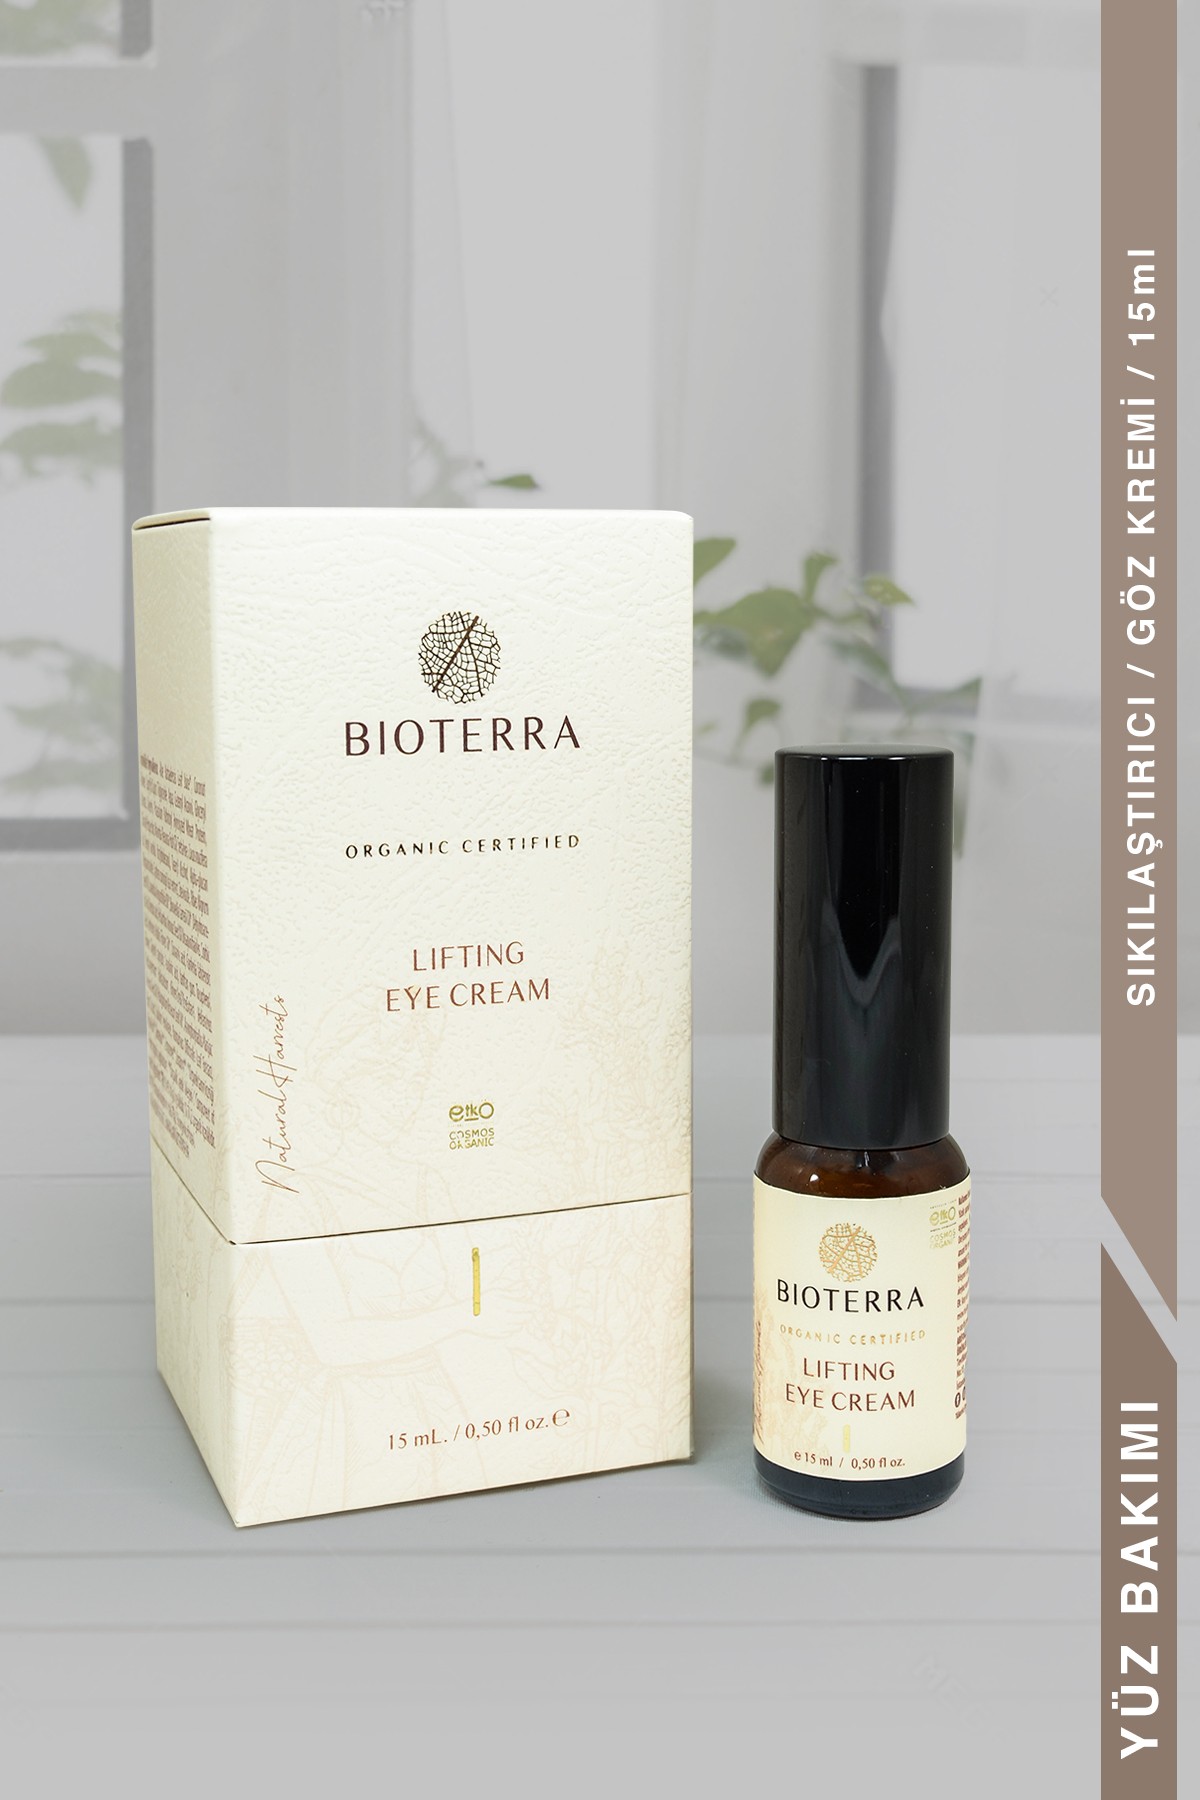 Lifting Eye Cream, Bioterra Organic Cream 15 ml, Natural Product 